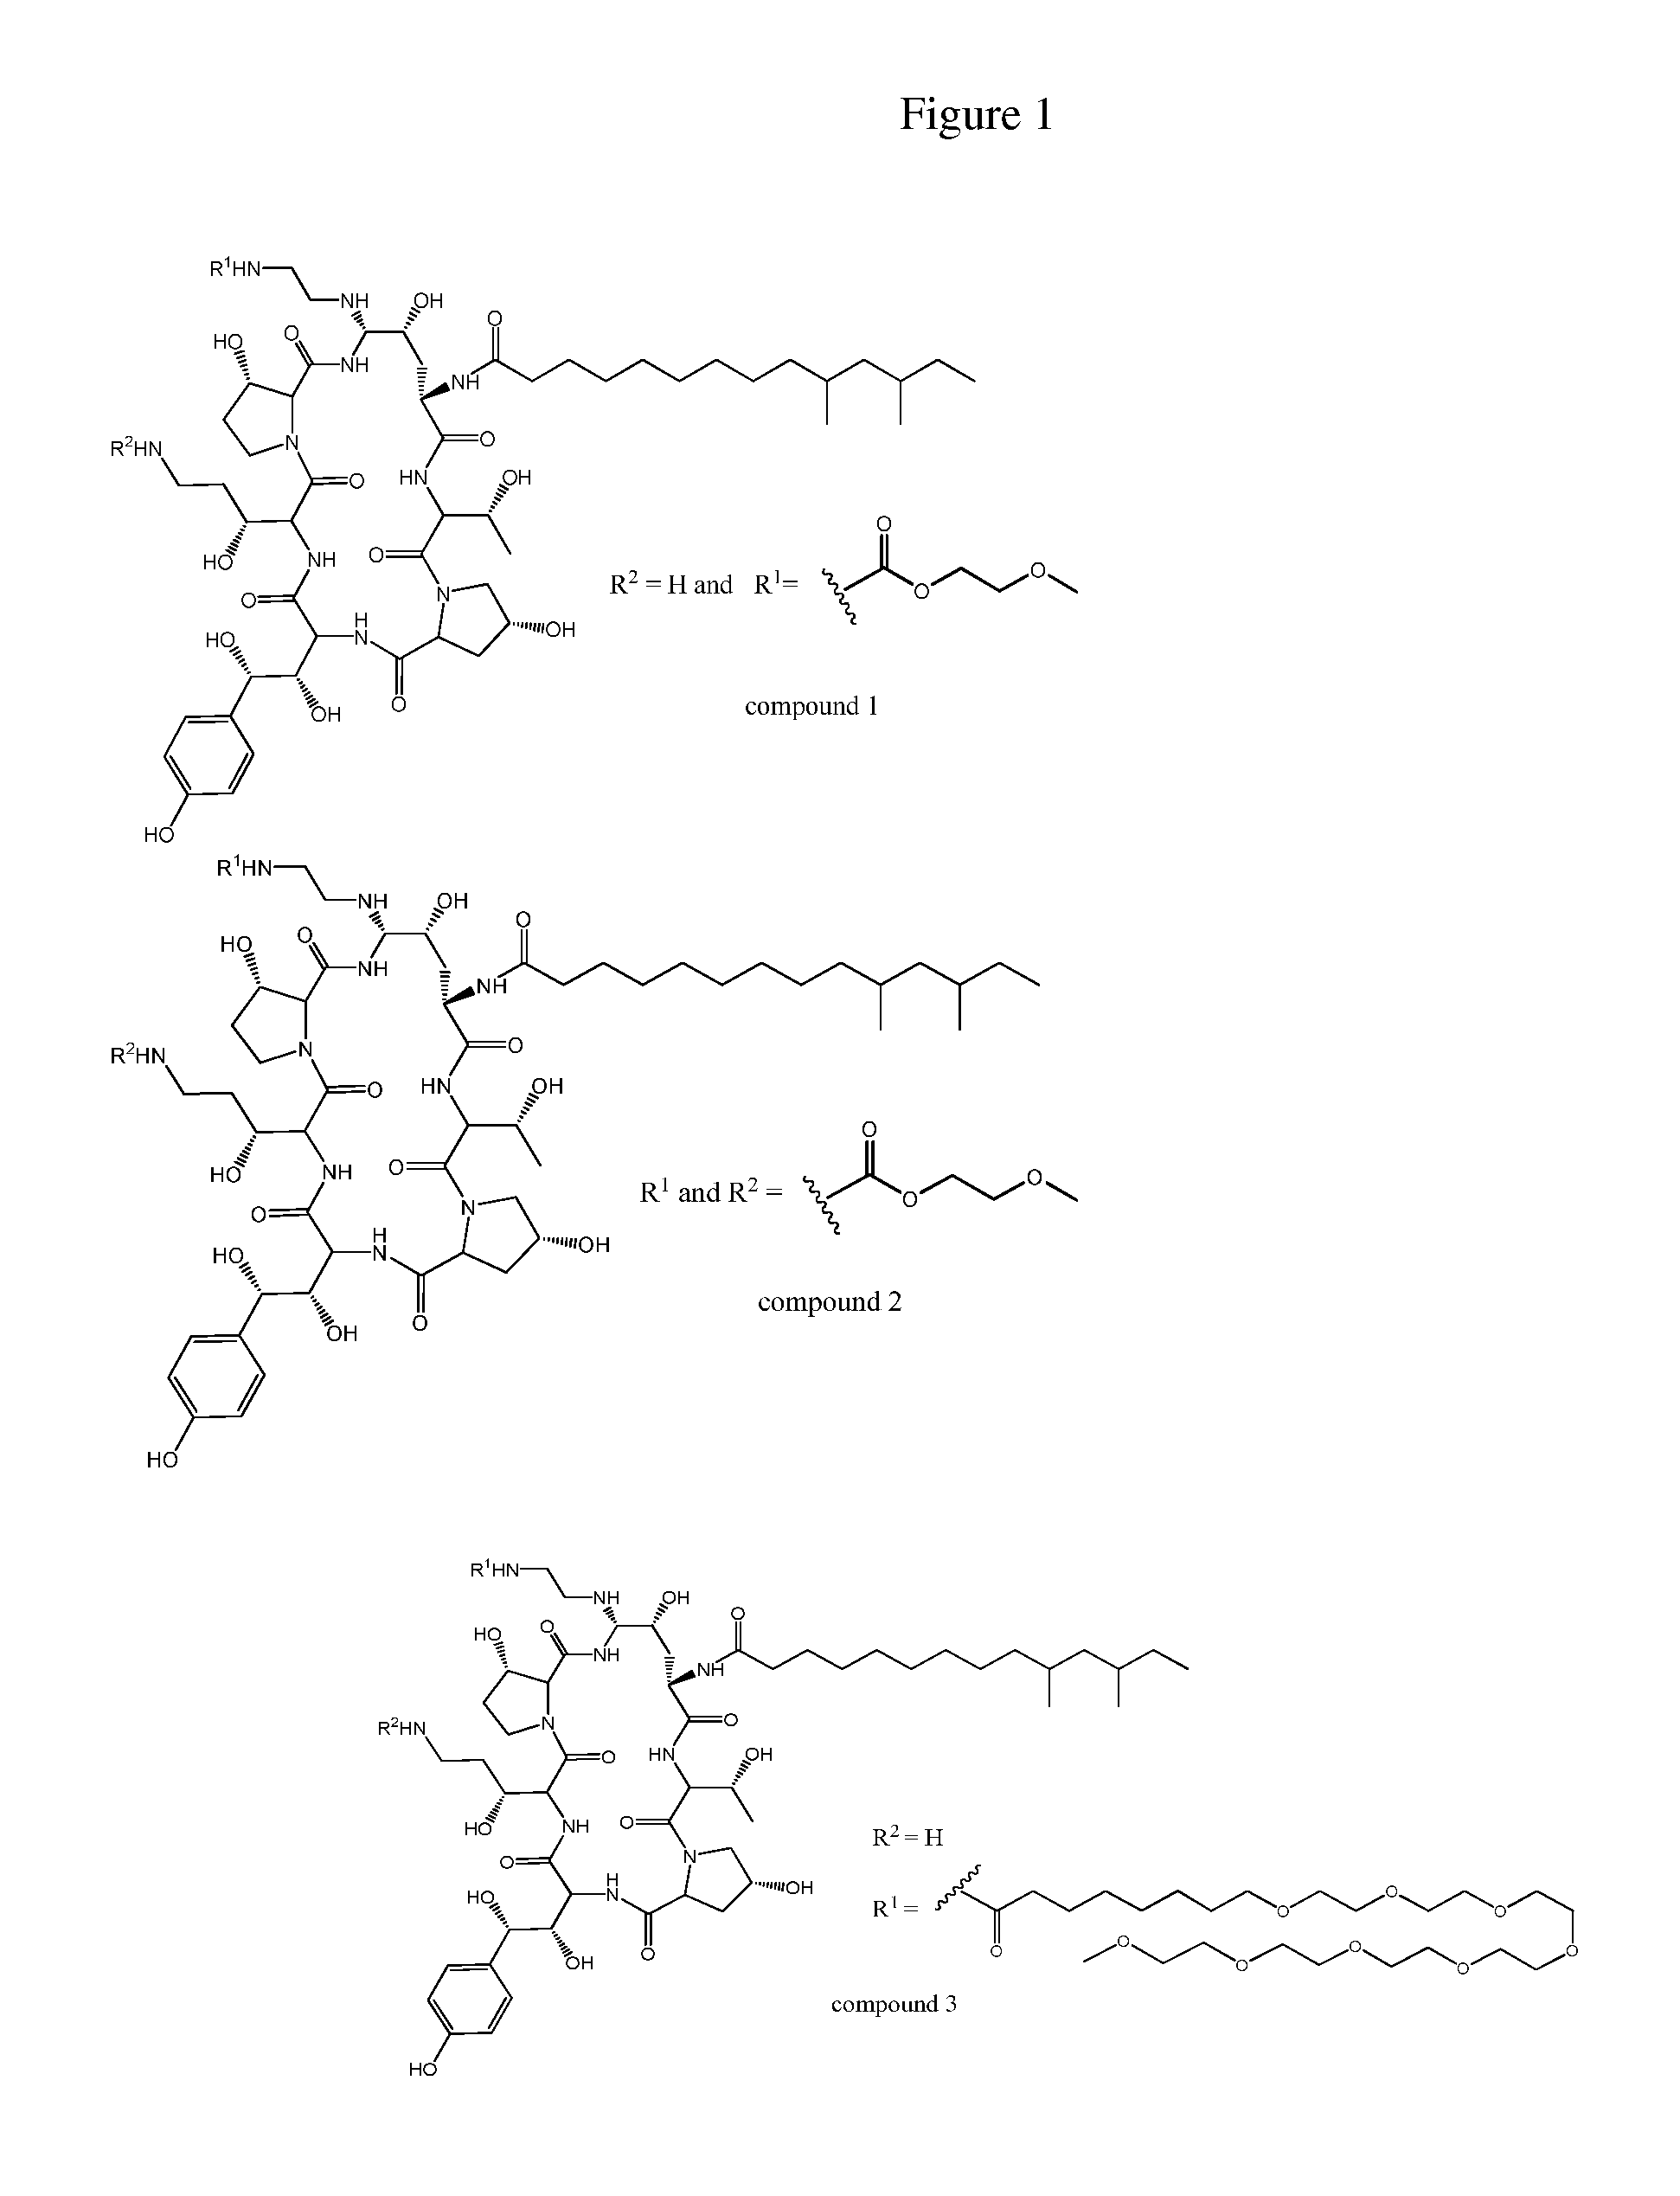 Dosing regimens for echinocandin class compounds